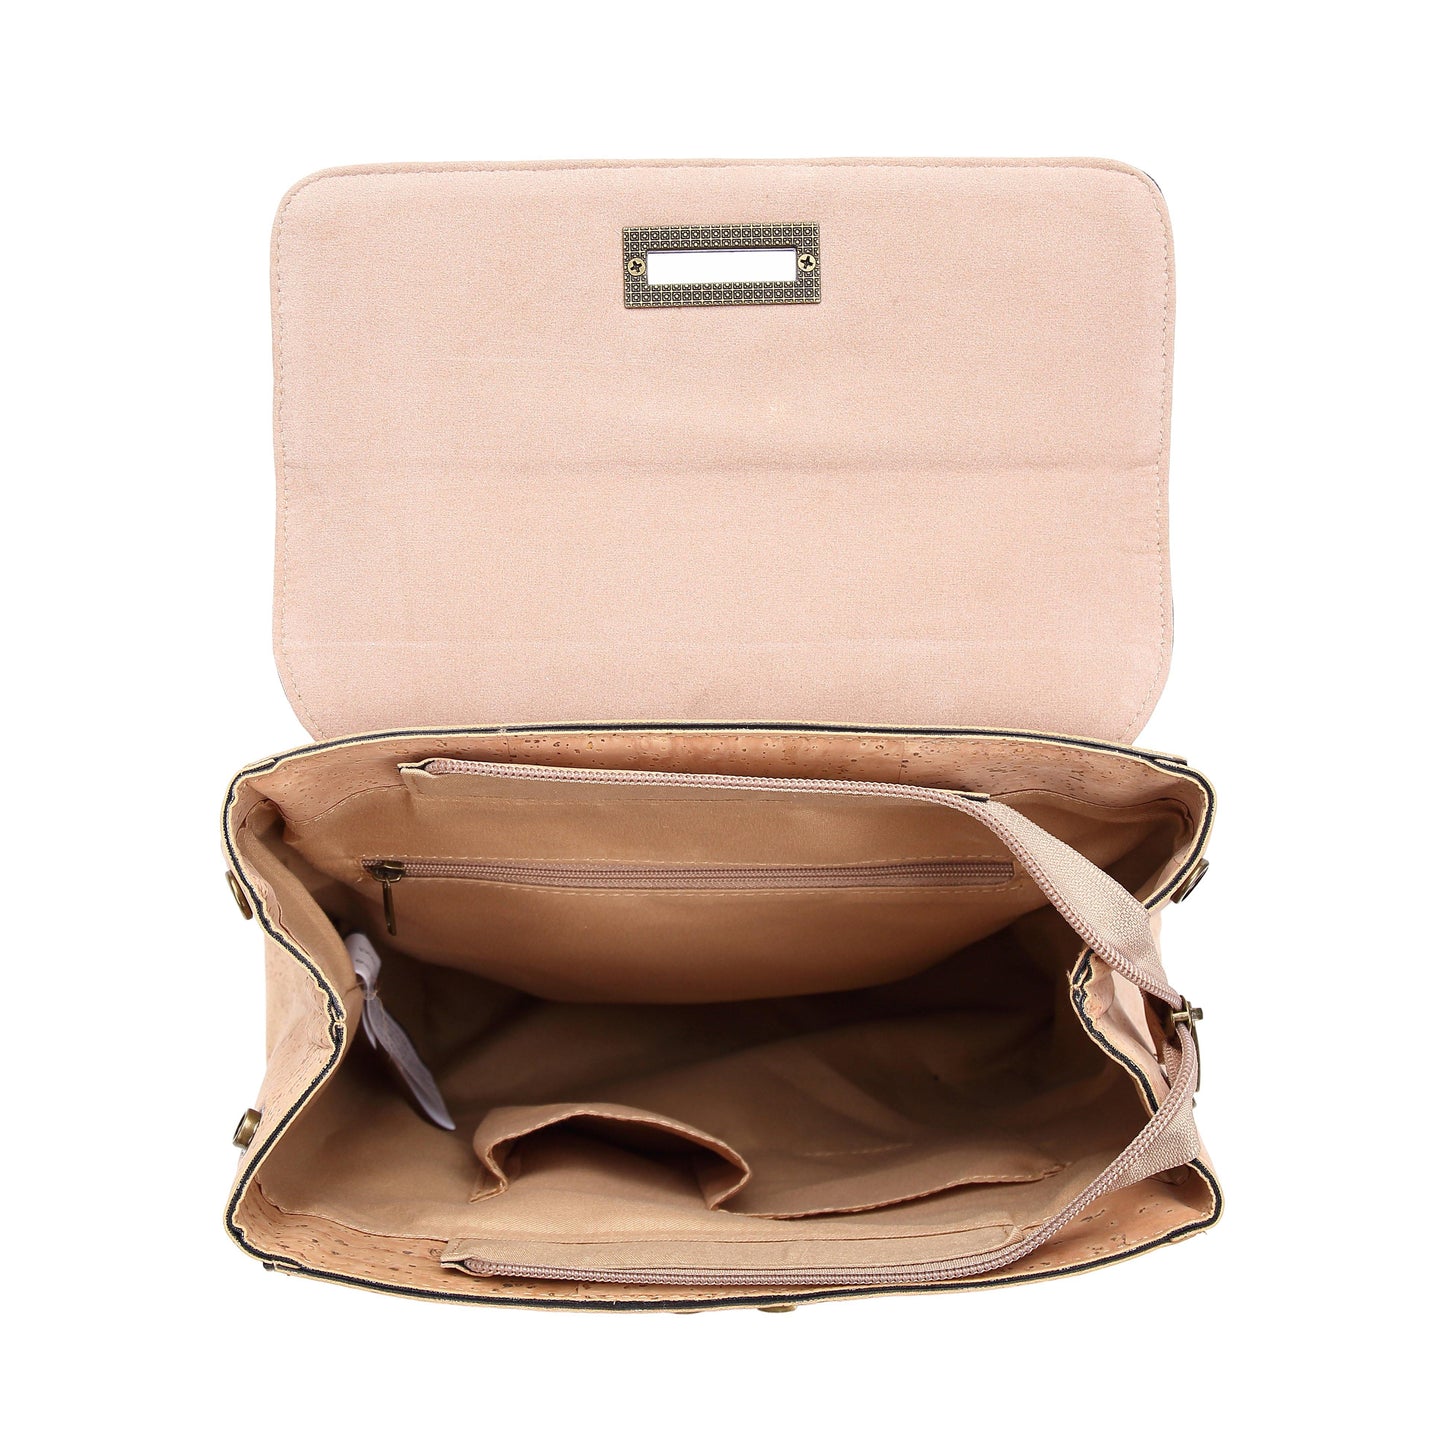 Cork backpack for women, cork bag, vegan bag, natural materials, eco bag, leather bag, scholl bag, cork bag, natural color cork 